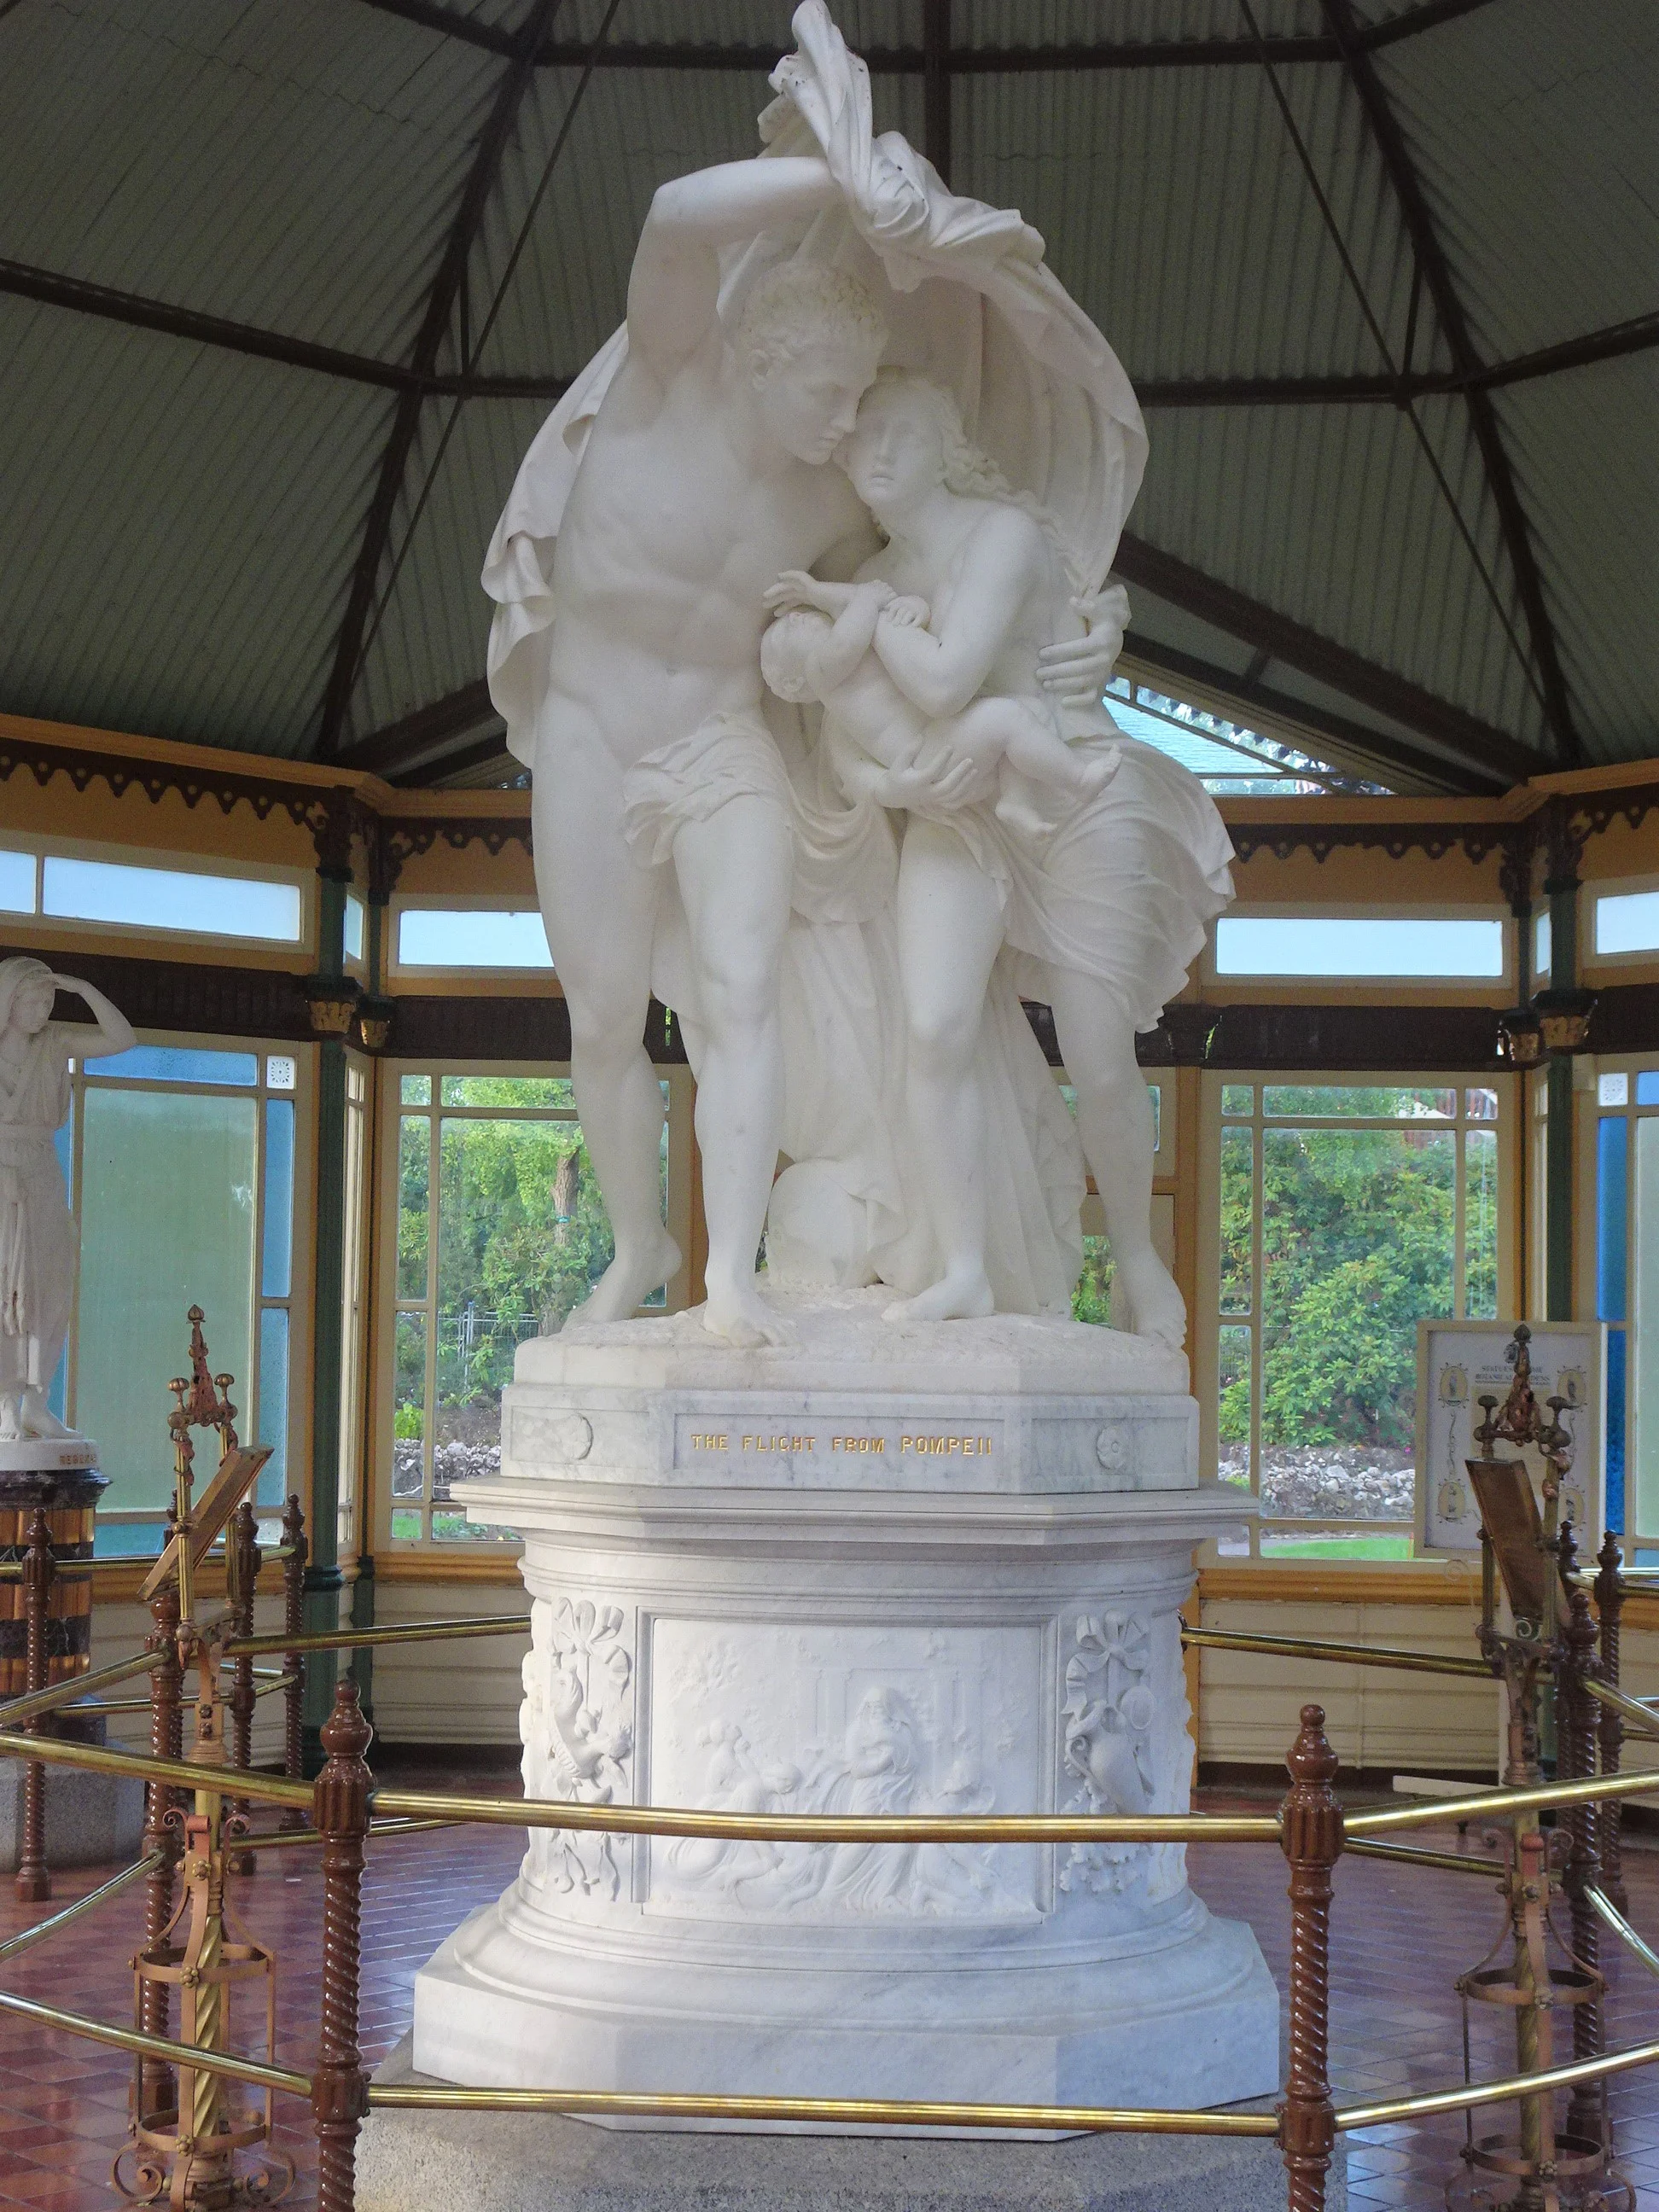  Marble statue of The Flight of Pompeii in the Statutory Pavillion at the Ballarat Botanic Gardens